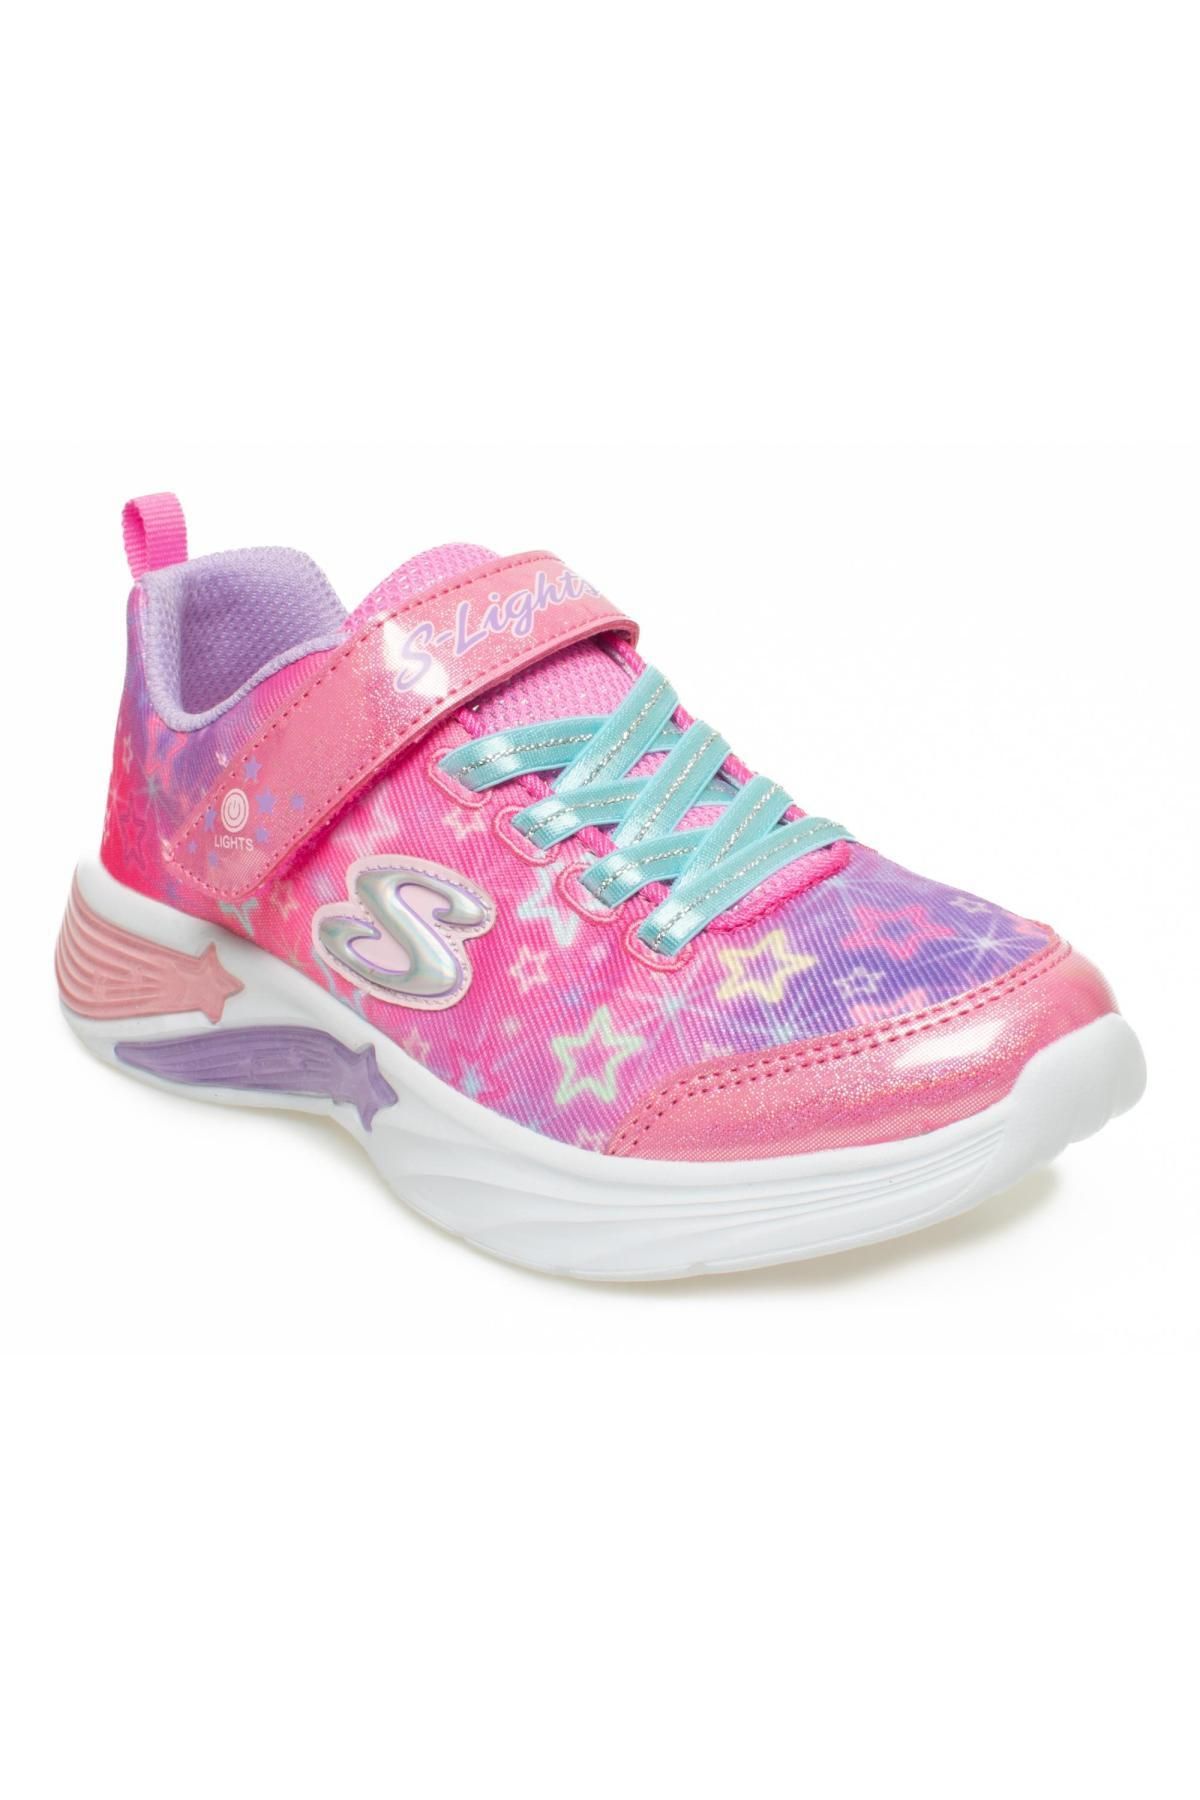 Skechers 302324 K S Lights Star Pembe Kız Çocuk Spor Ayakkabı